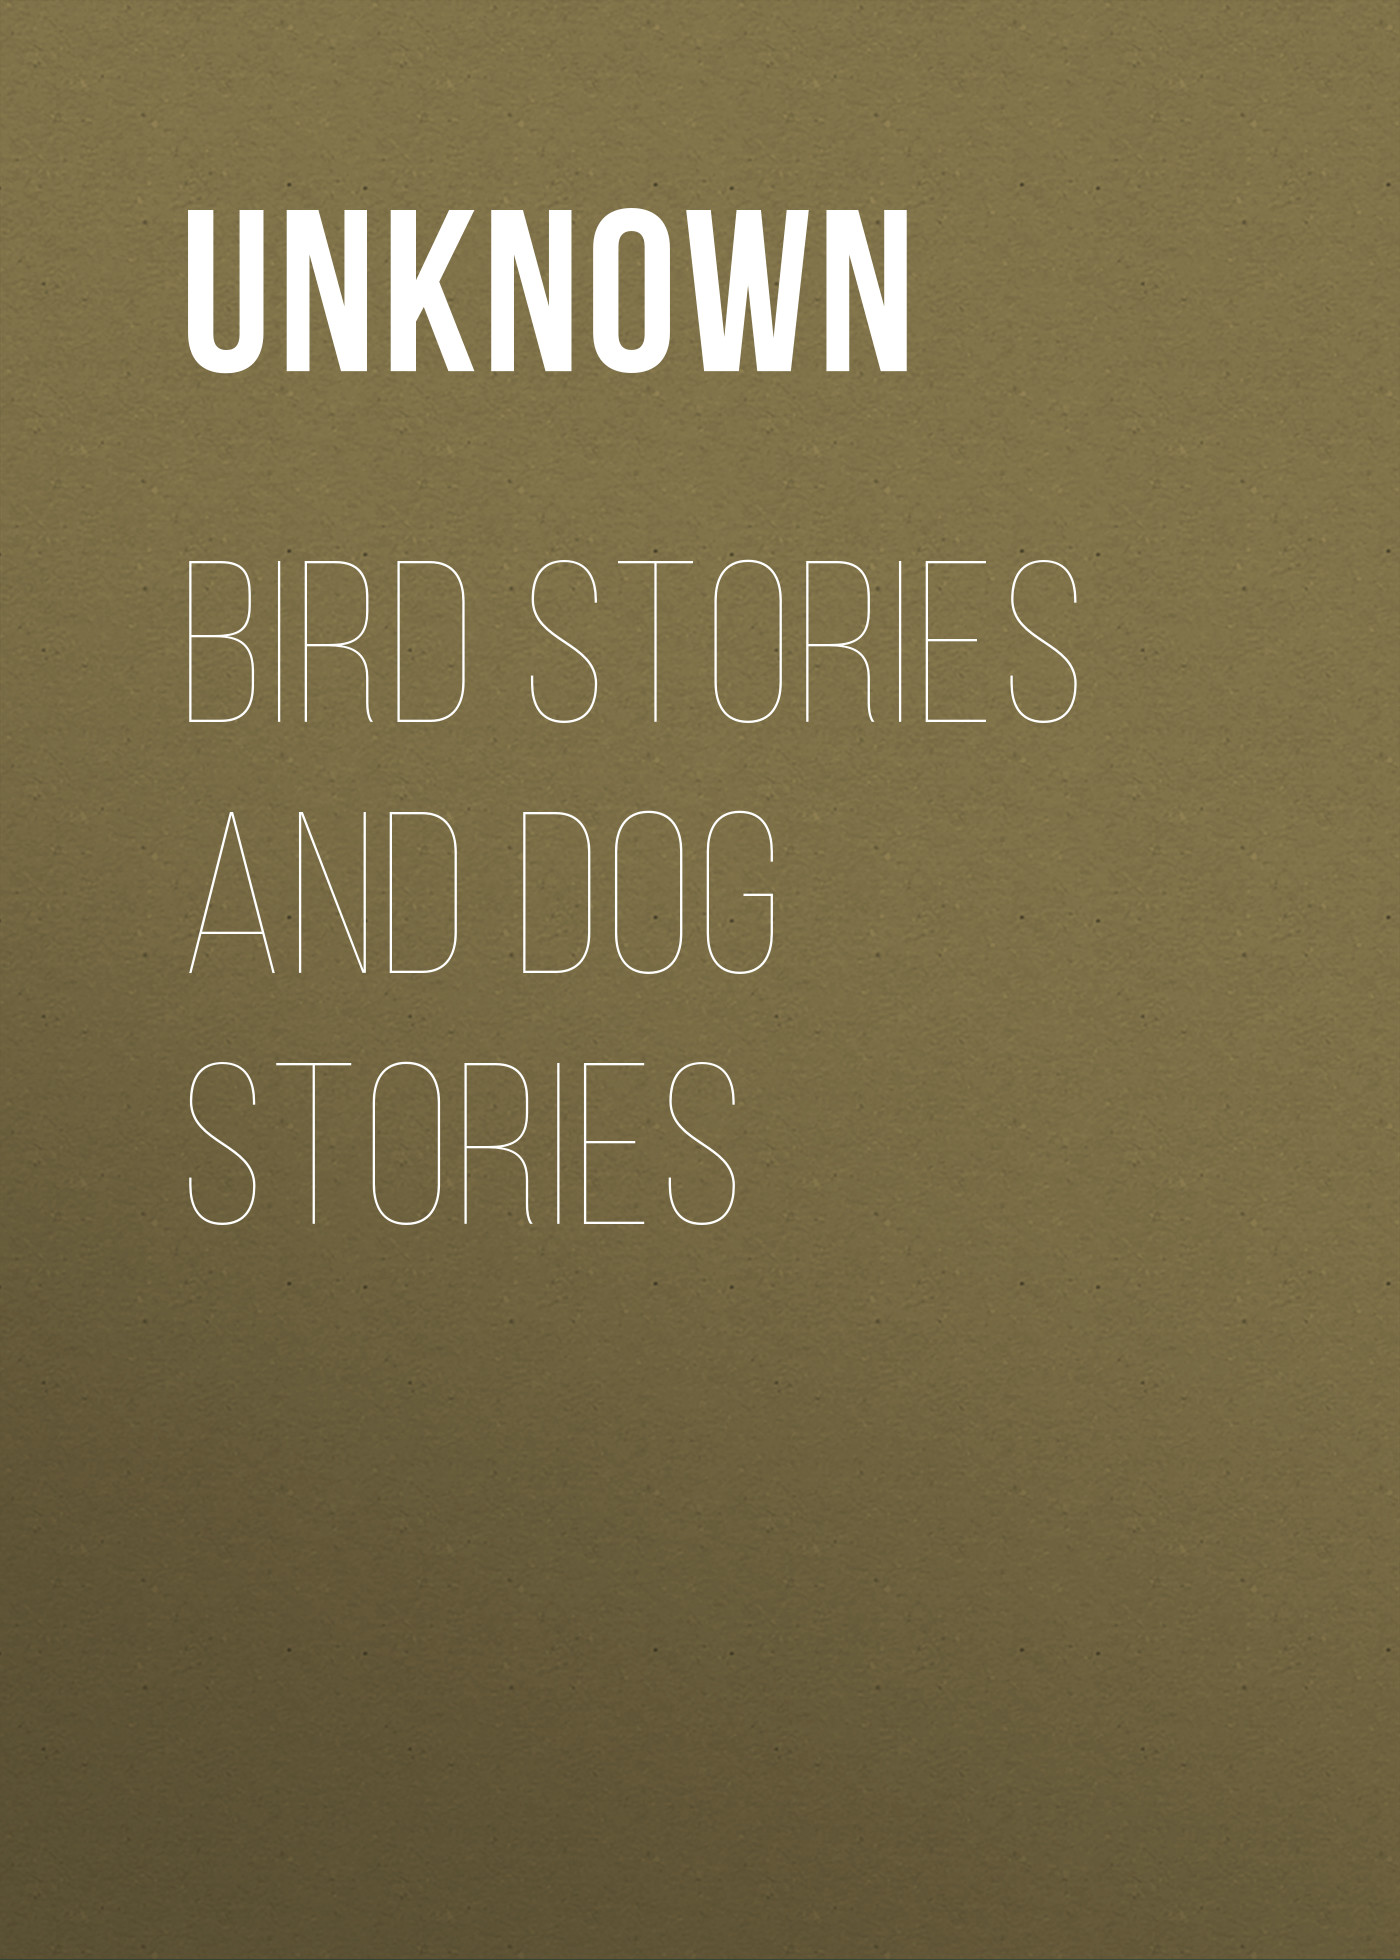 Книга Bird Stories and Dog Stories из серии , созданная Unknown Unknown, может относится к жанру Зарубежные детские книги, Природа и животные, Зарубежная старинная литература, Зарубежная классика. Стоимость электронной книги Bird Stories and Dog Stories с идентификатором 35495783 составляет 0 руб.